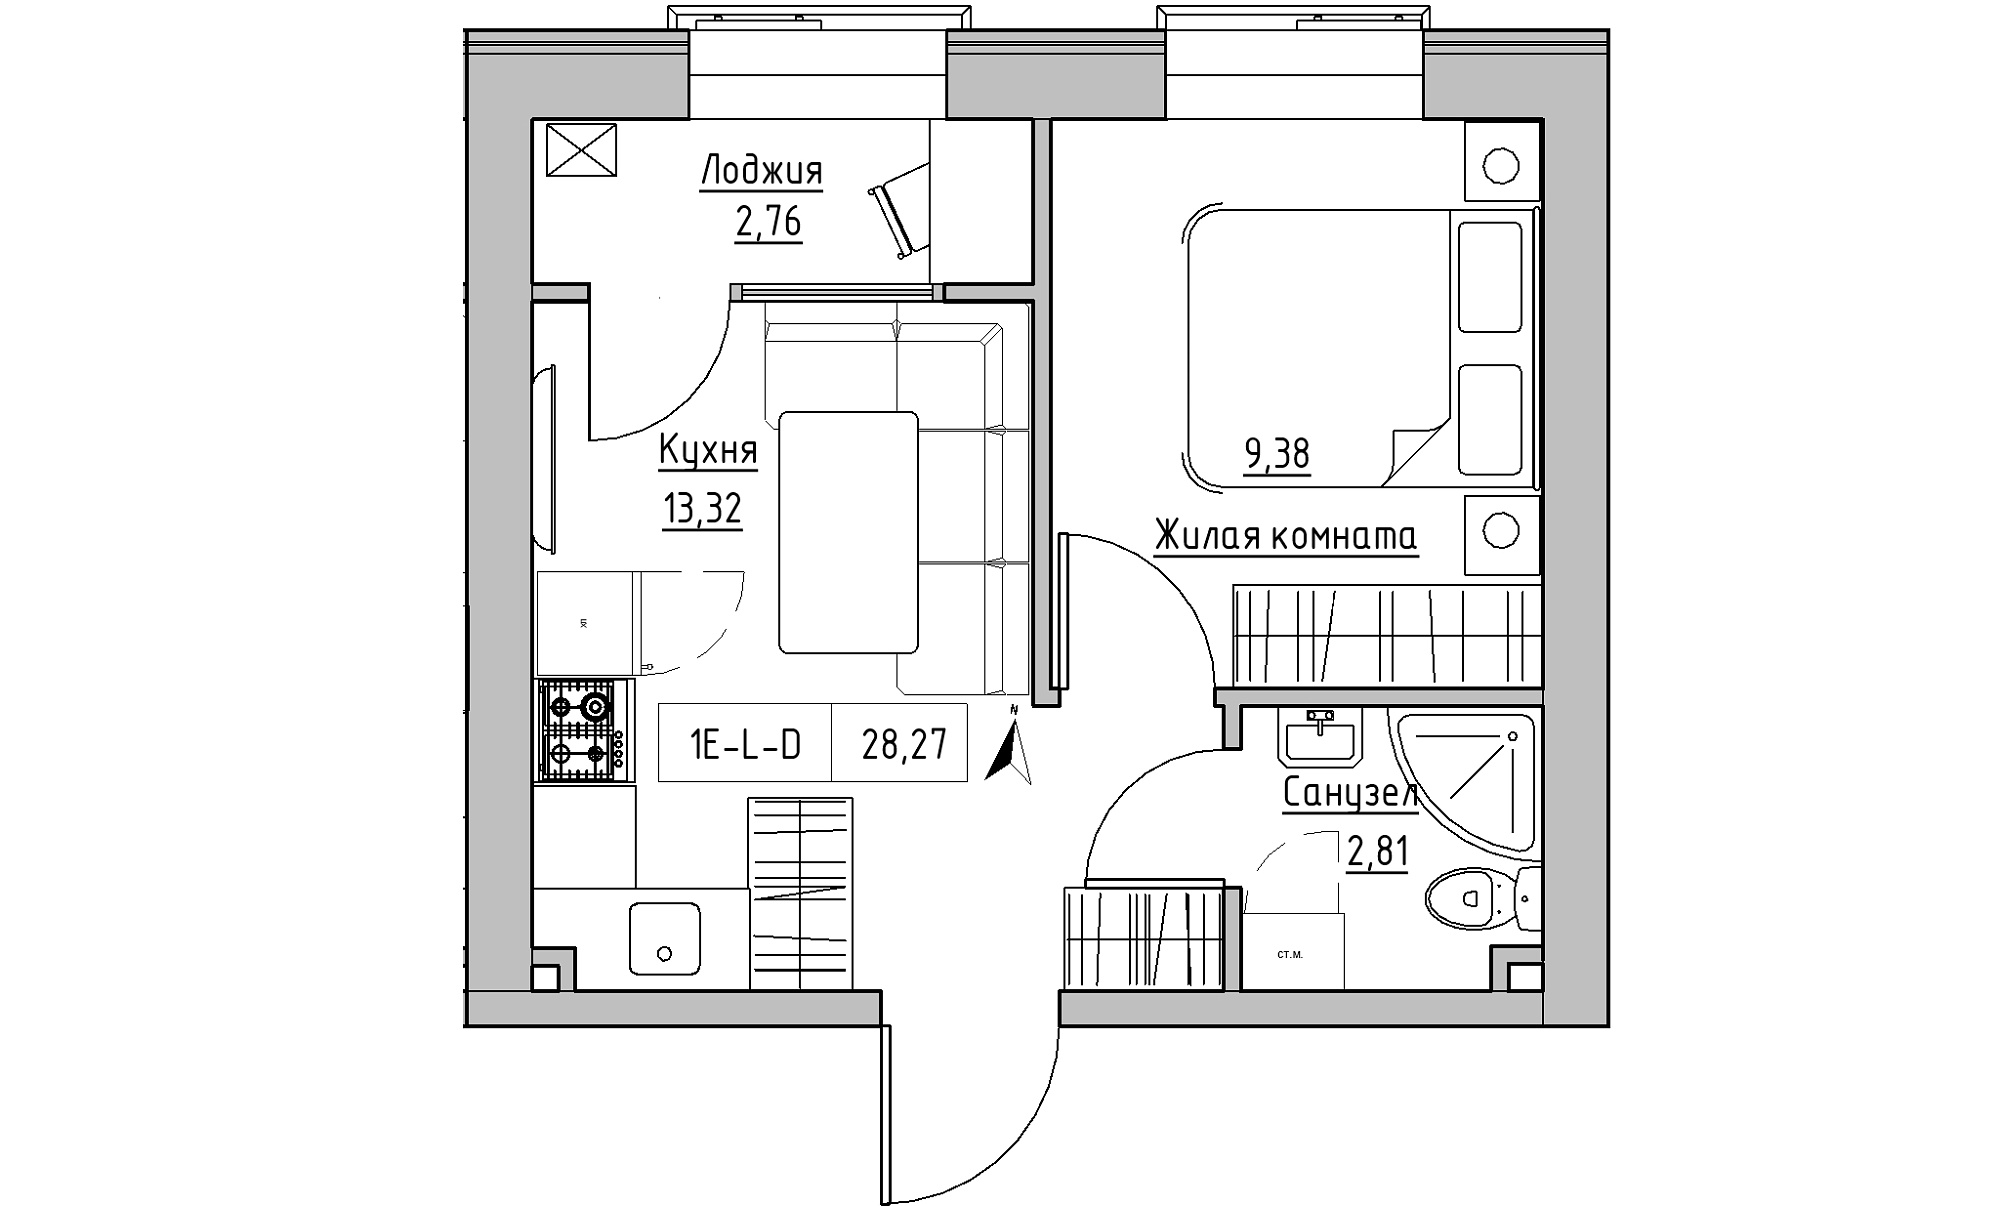 Планування 1-к квартира площею 28.27м2, KS-023-02/0017.